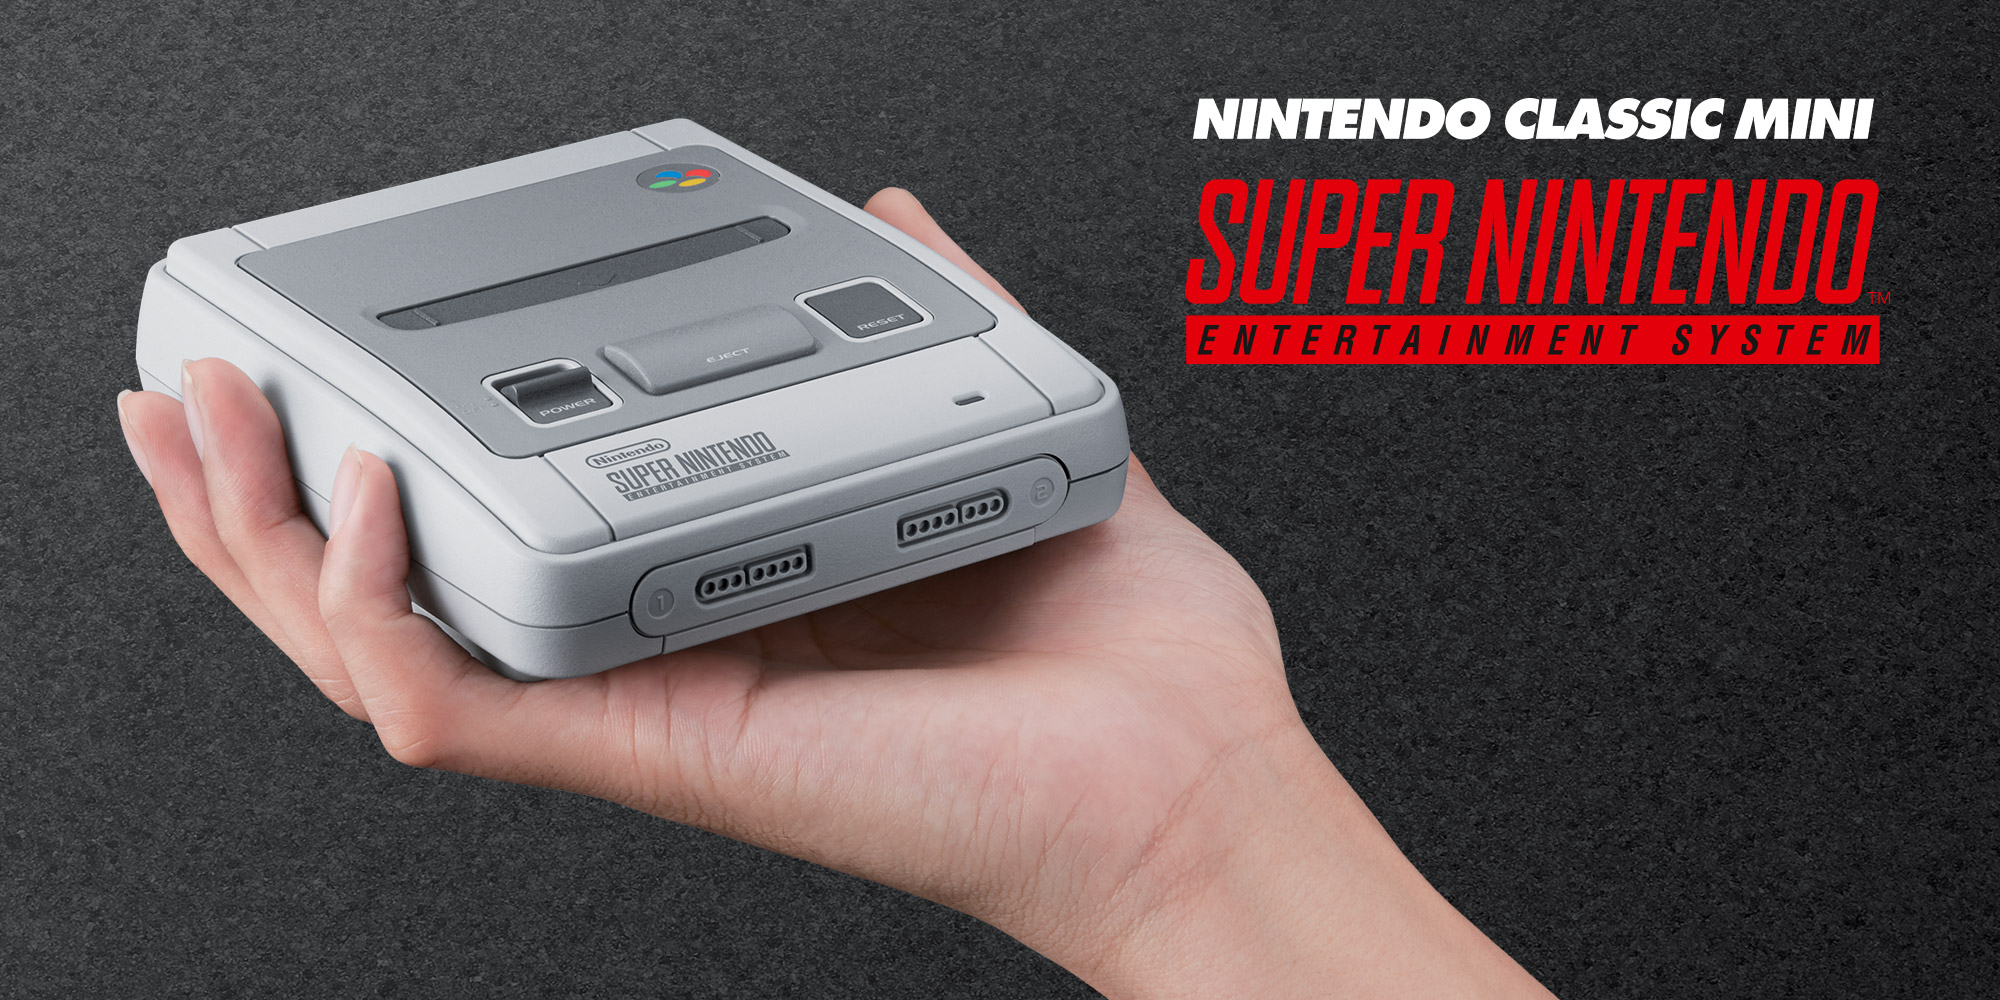 Nintendo annonce la console Nintendo Classic Mini: Super Nintendo Entertainment System